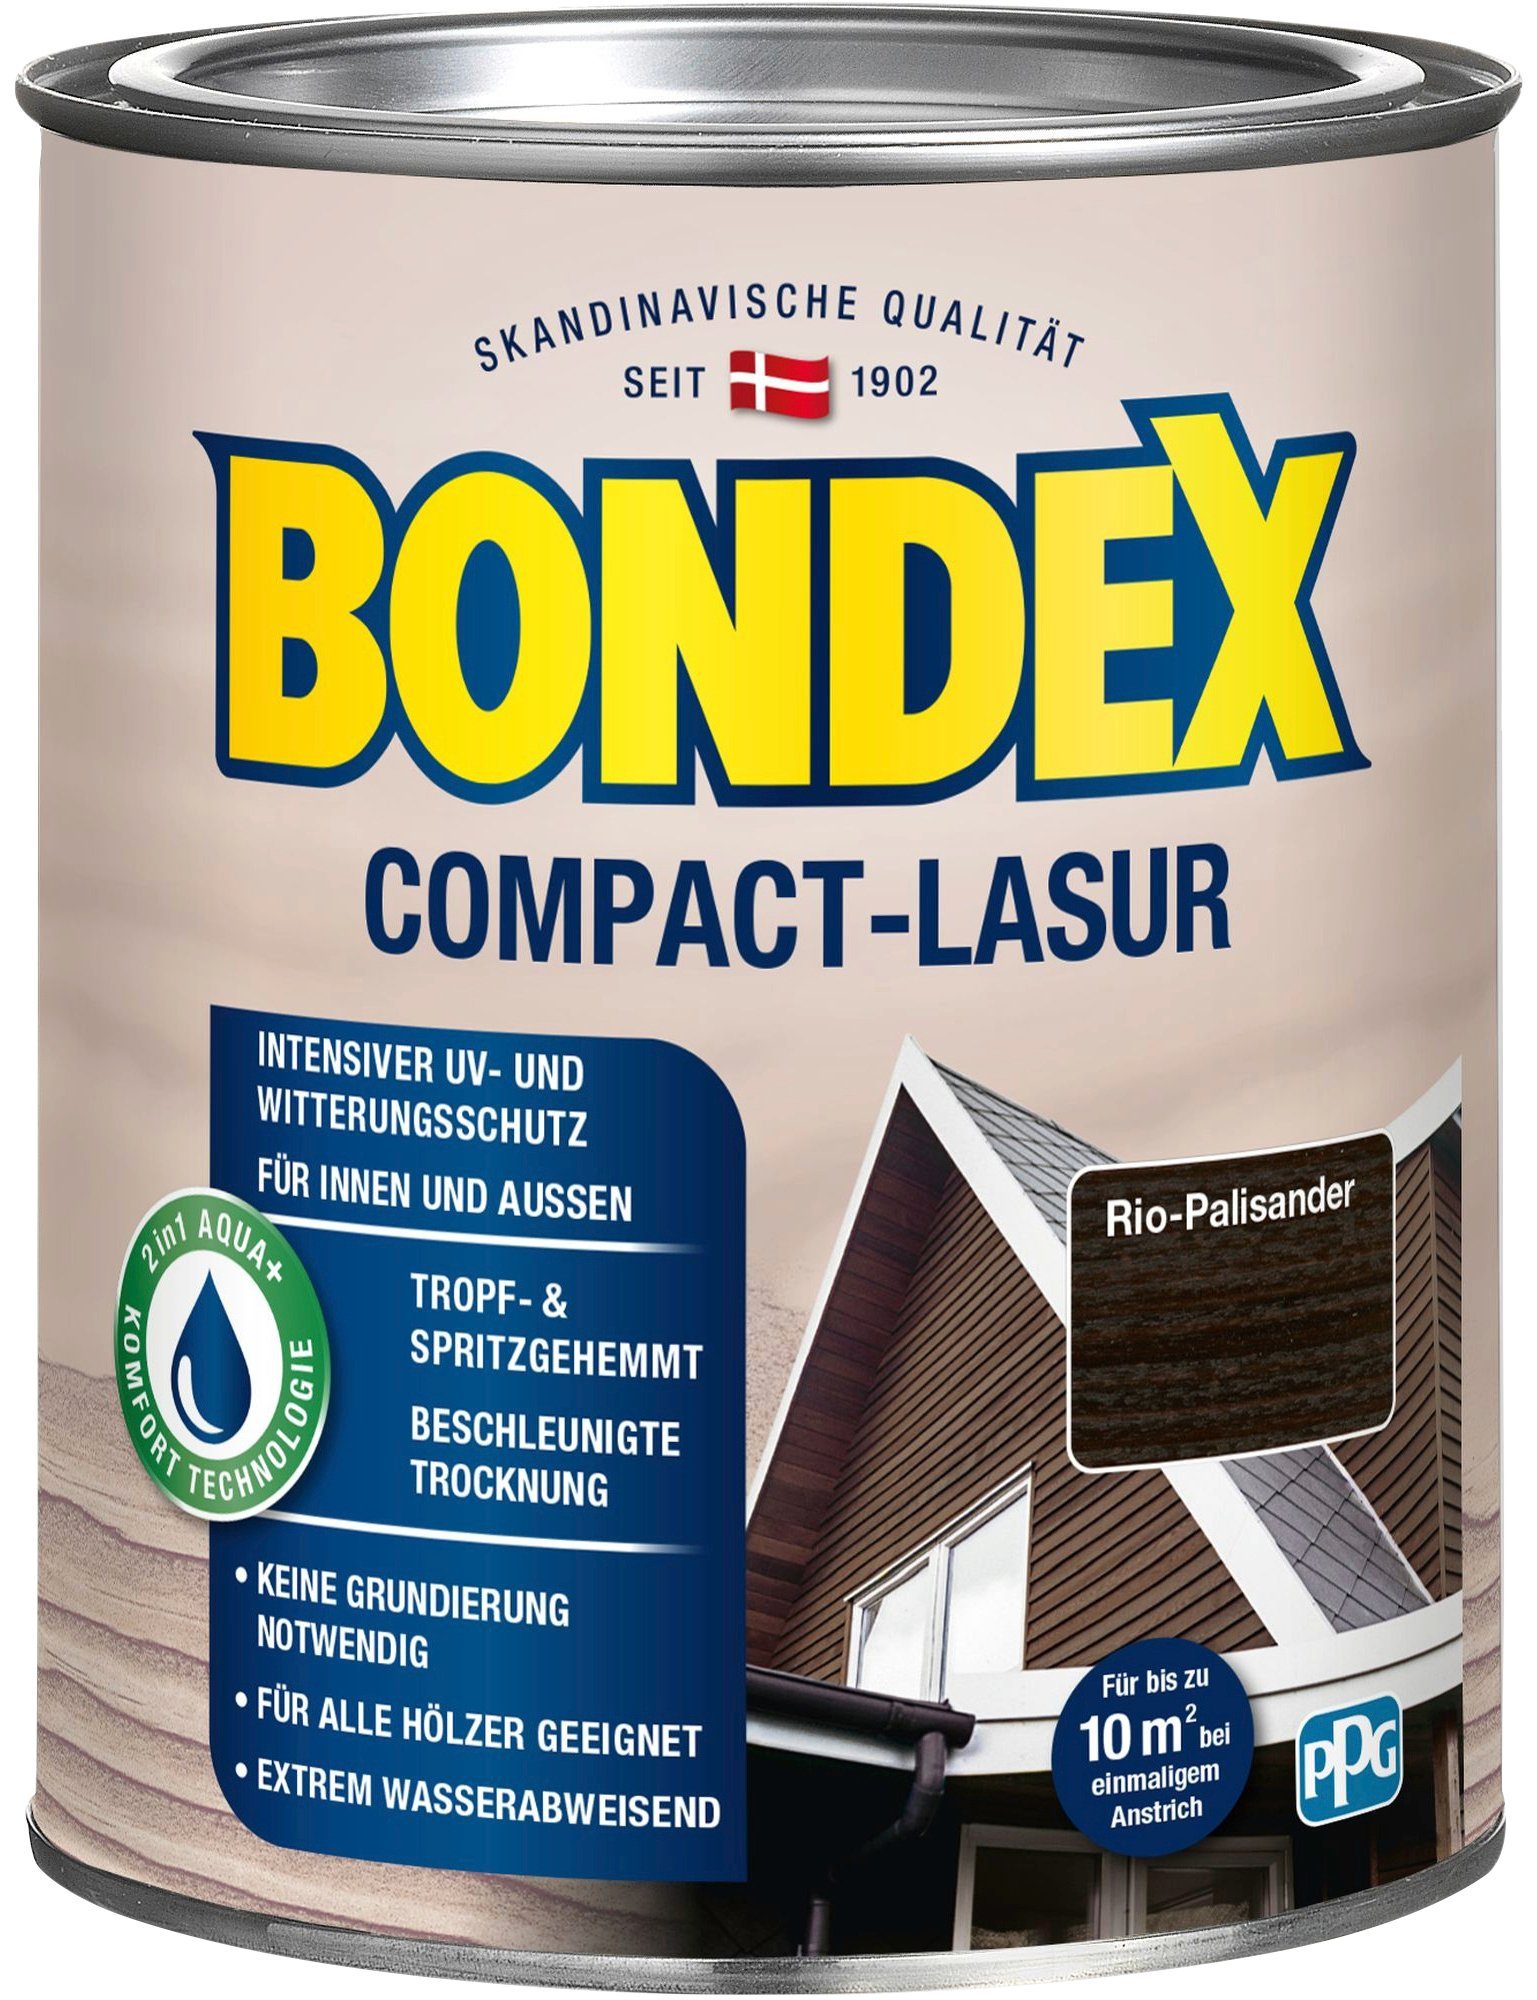 Witterungsschutz, & Bondex UV- COMPACT-LASUR, wasserabweisend extrem Holzschutzlasur Palisander Rio intensiver